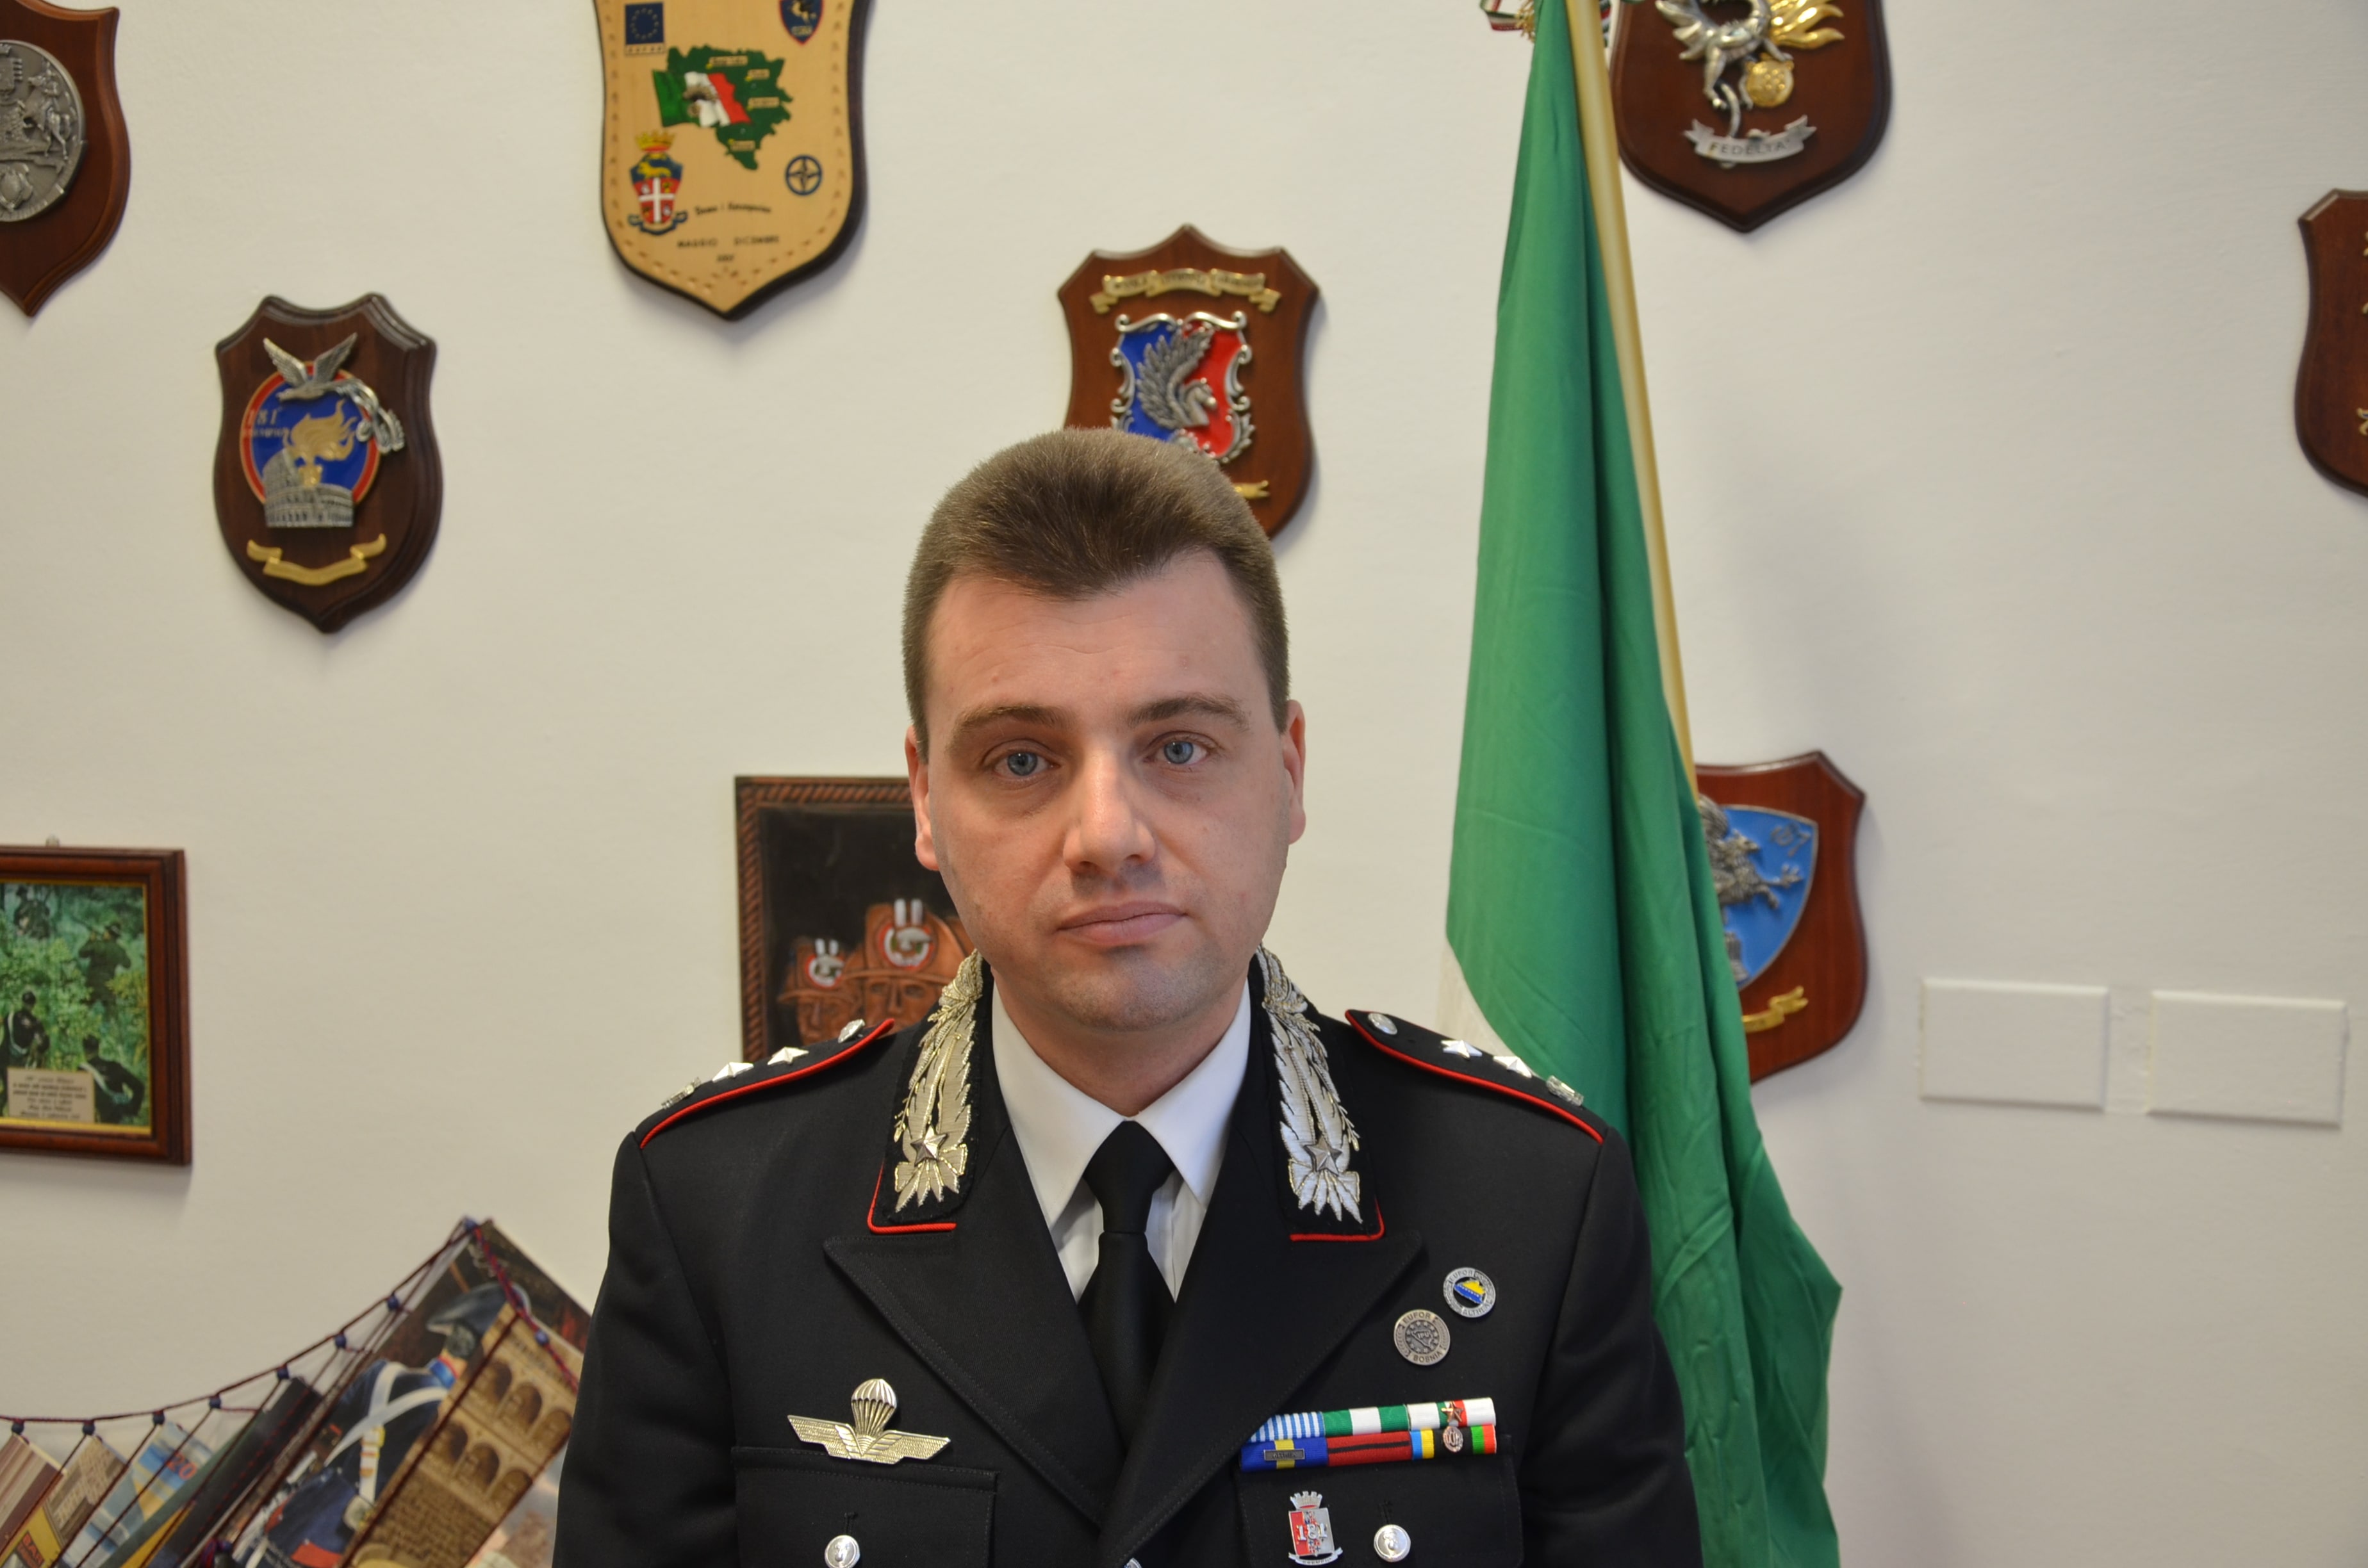 Il reparto operativo dei carabinieri di Gorizia ha un nuovo comandate, nominato Filippo Tancon Lutteri